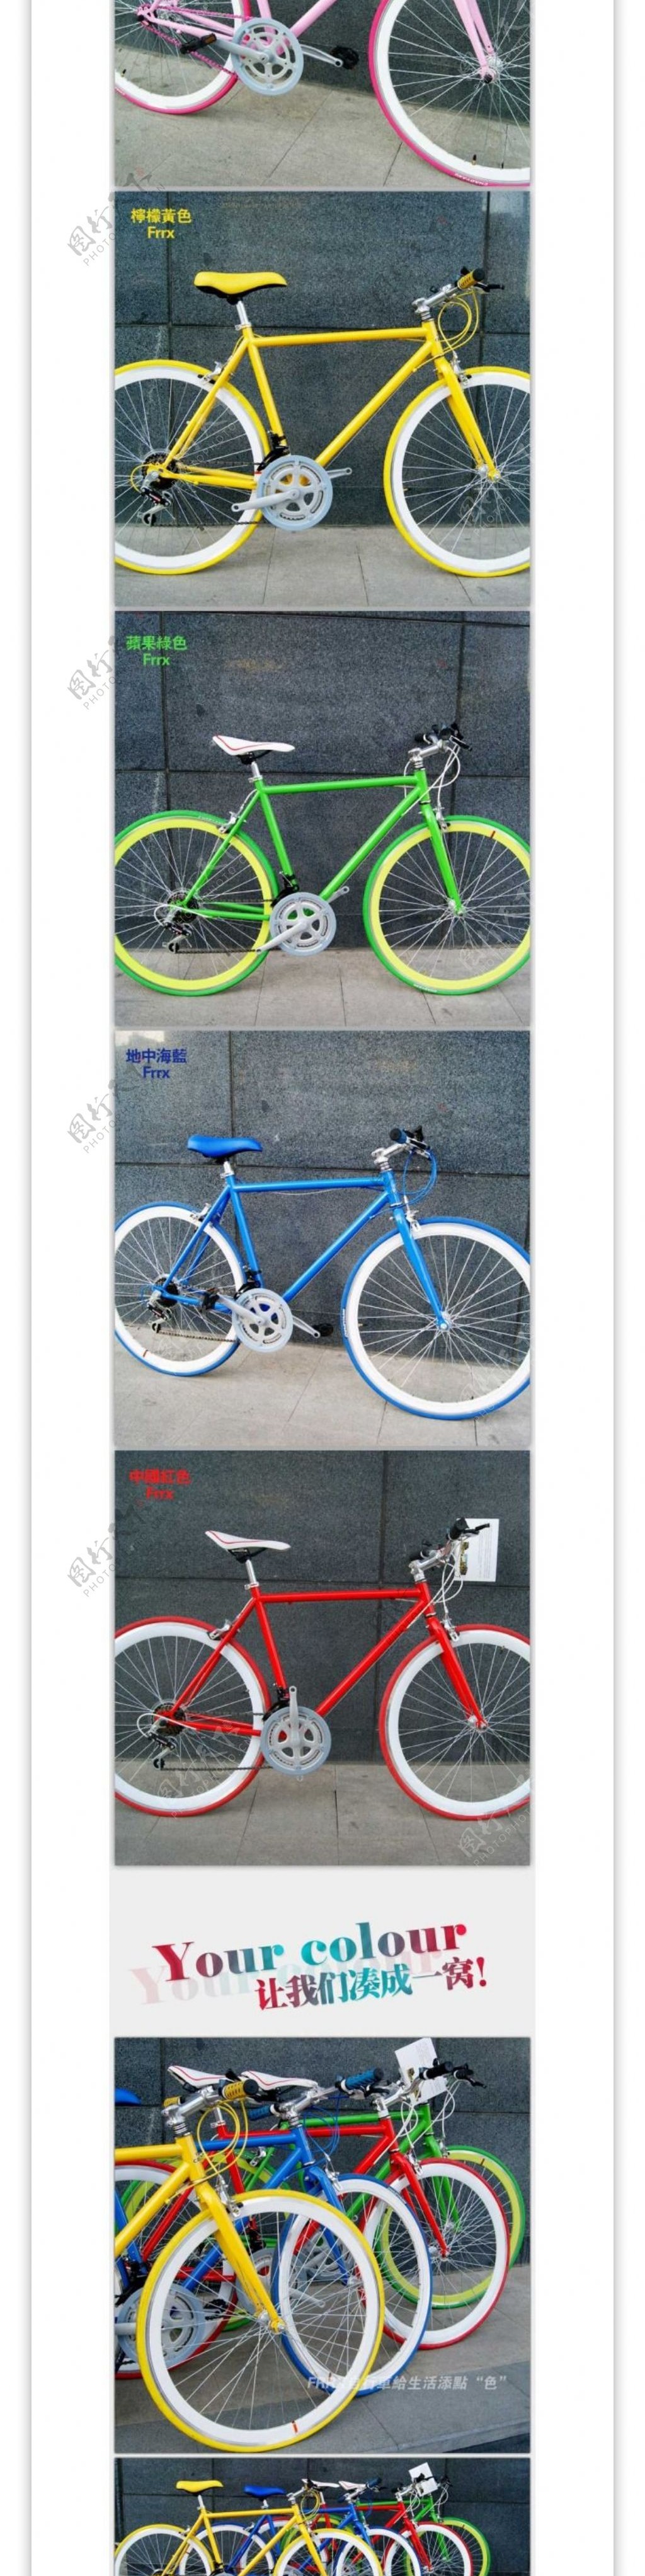 多彩自行车详情页宝贝描述